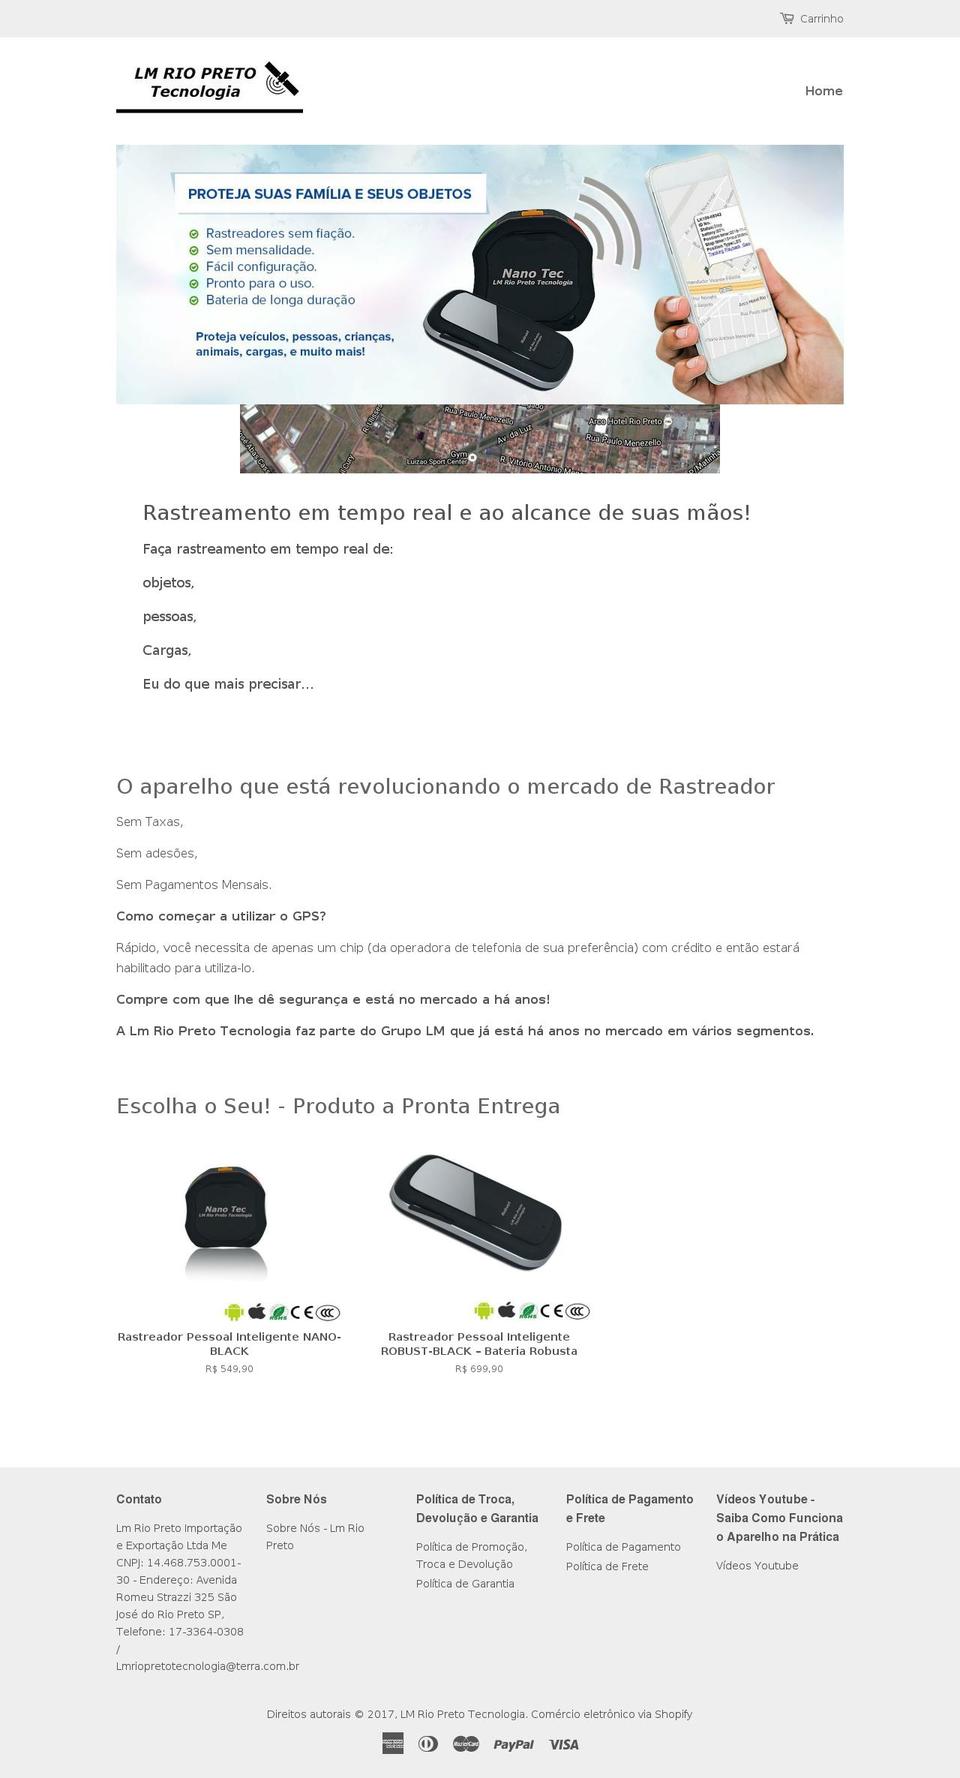 rastreadorpessoal.com.br shopify website screenshot